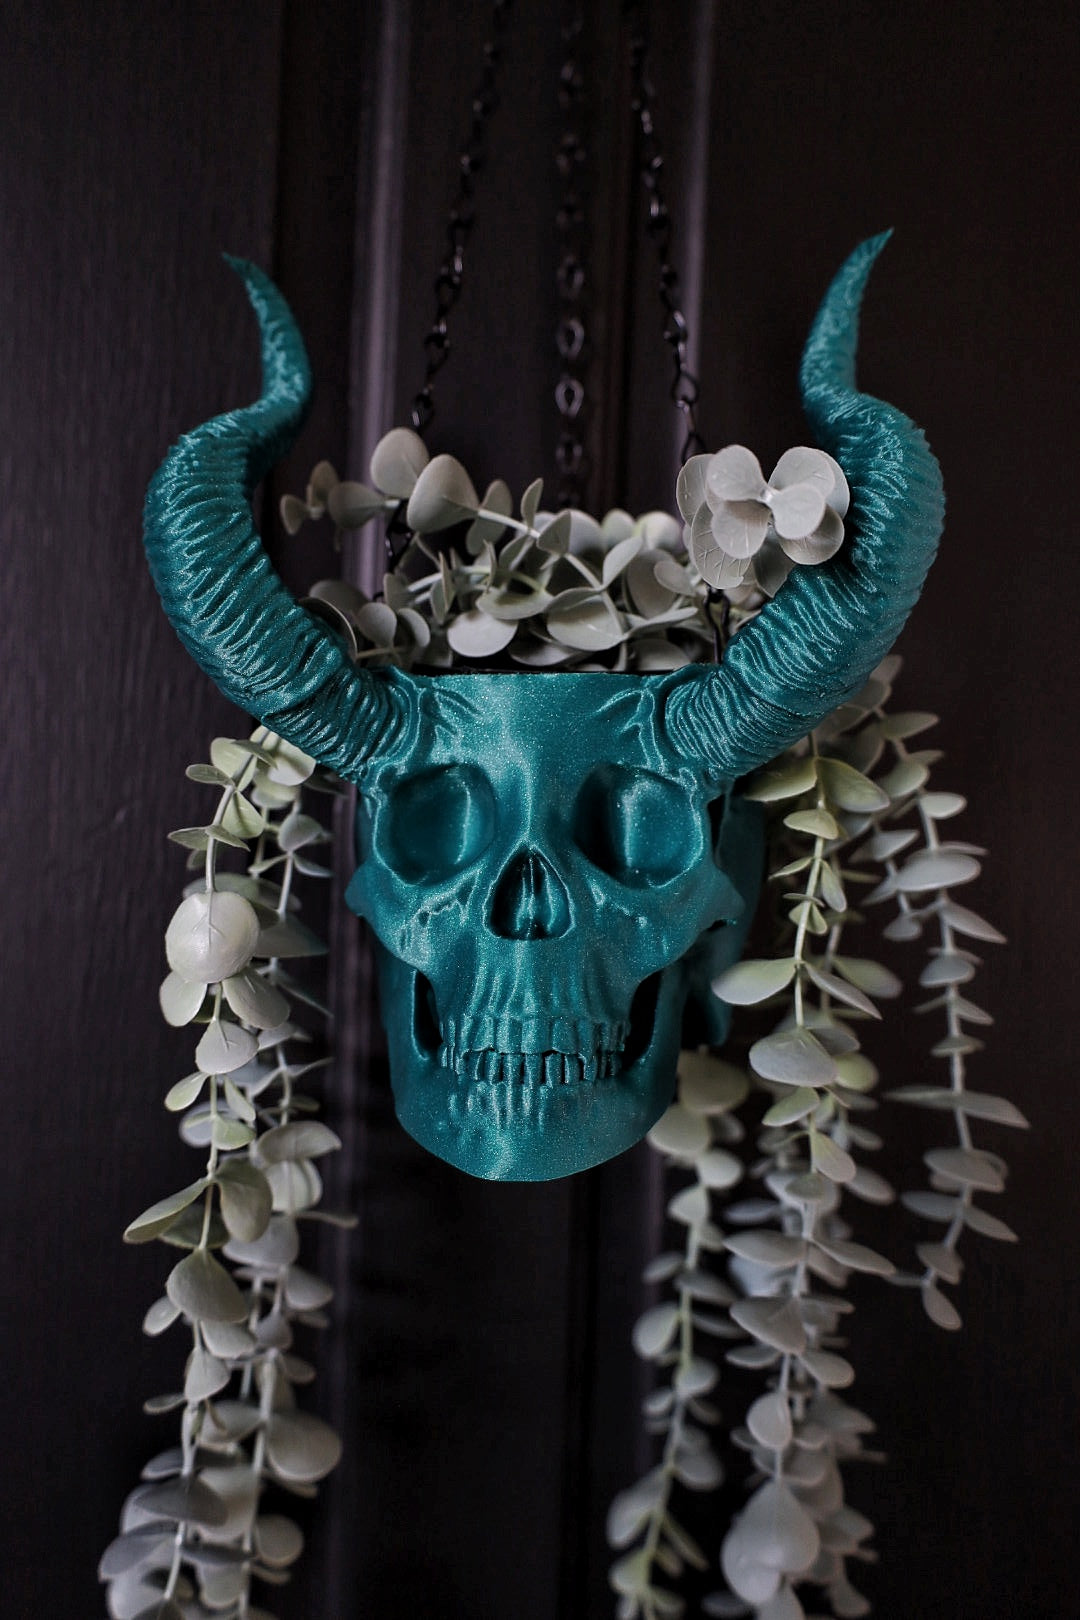 Horned Skull Hanging Planter